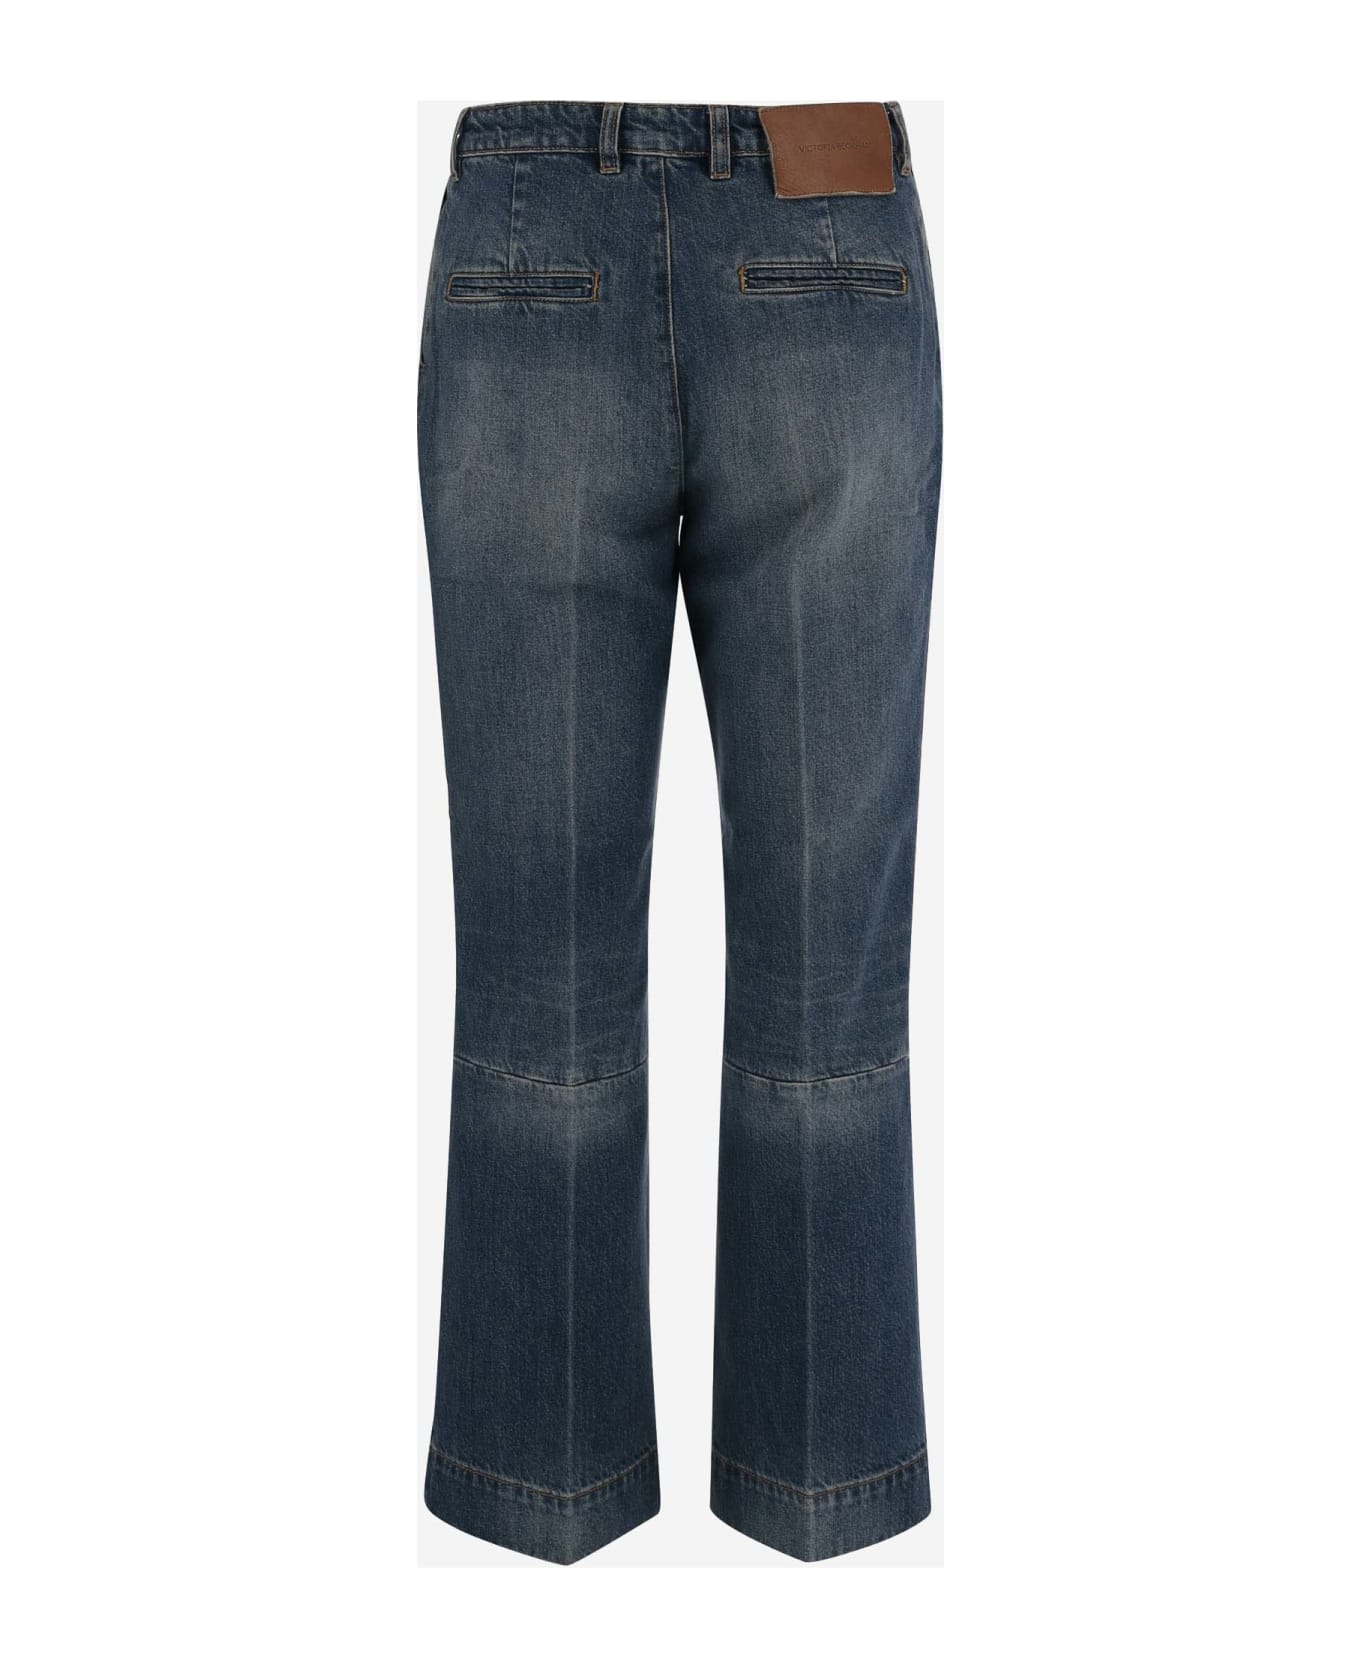 Victoria Beckham Cotton Denim Jeans - Denim